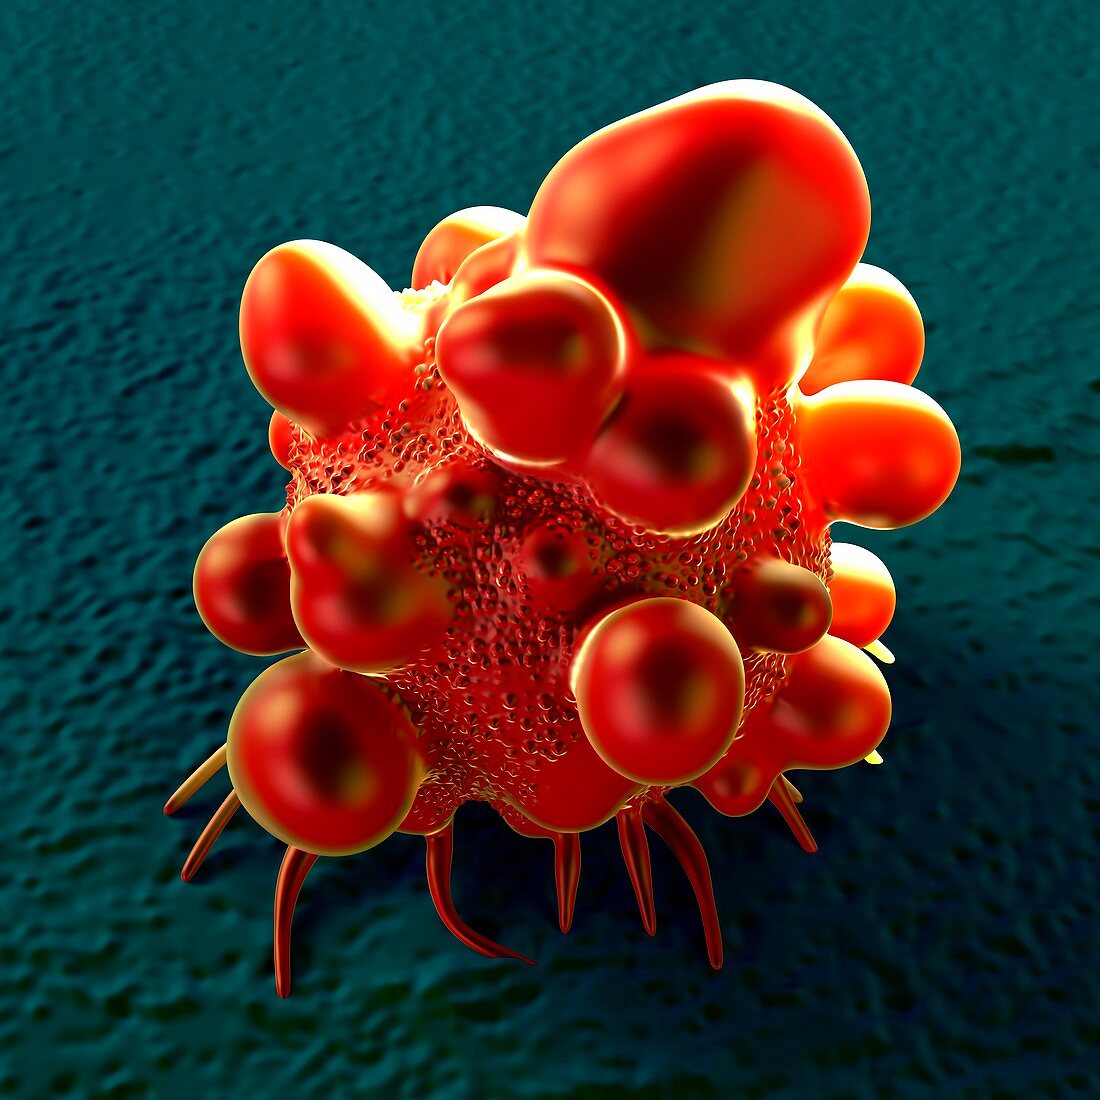 Bowel cancer cell,illustration